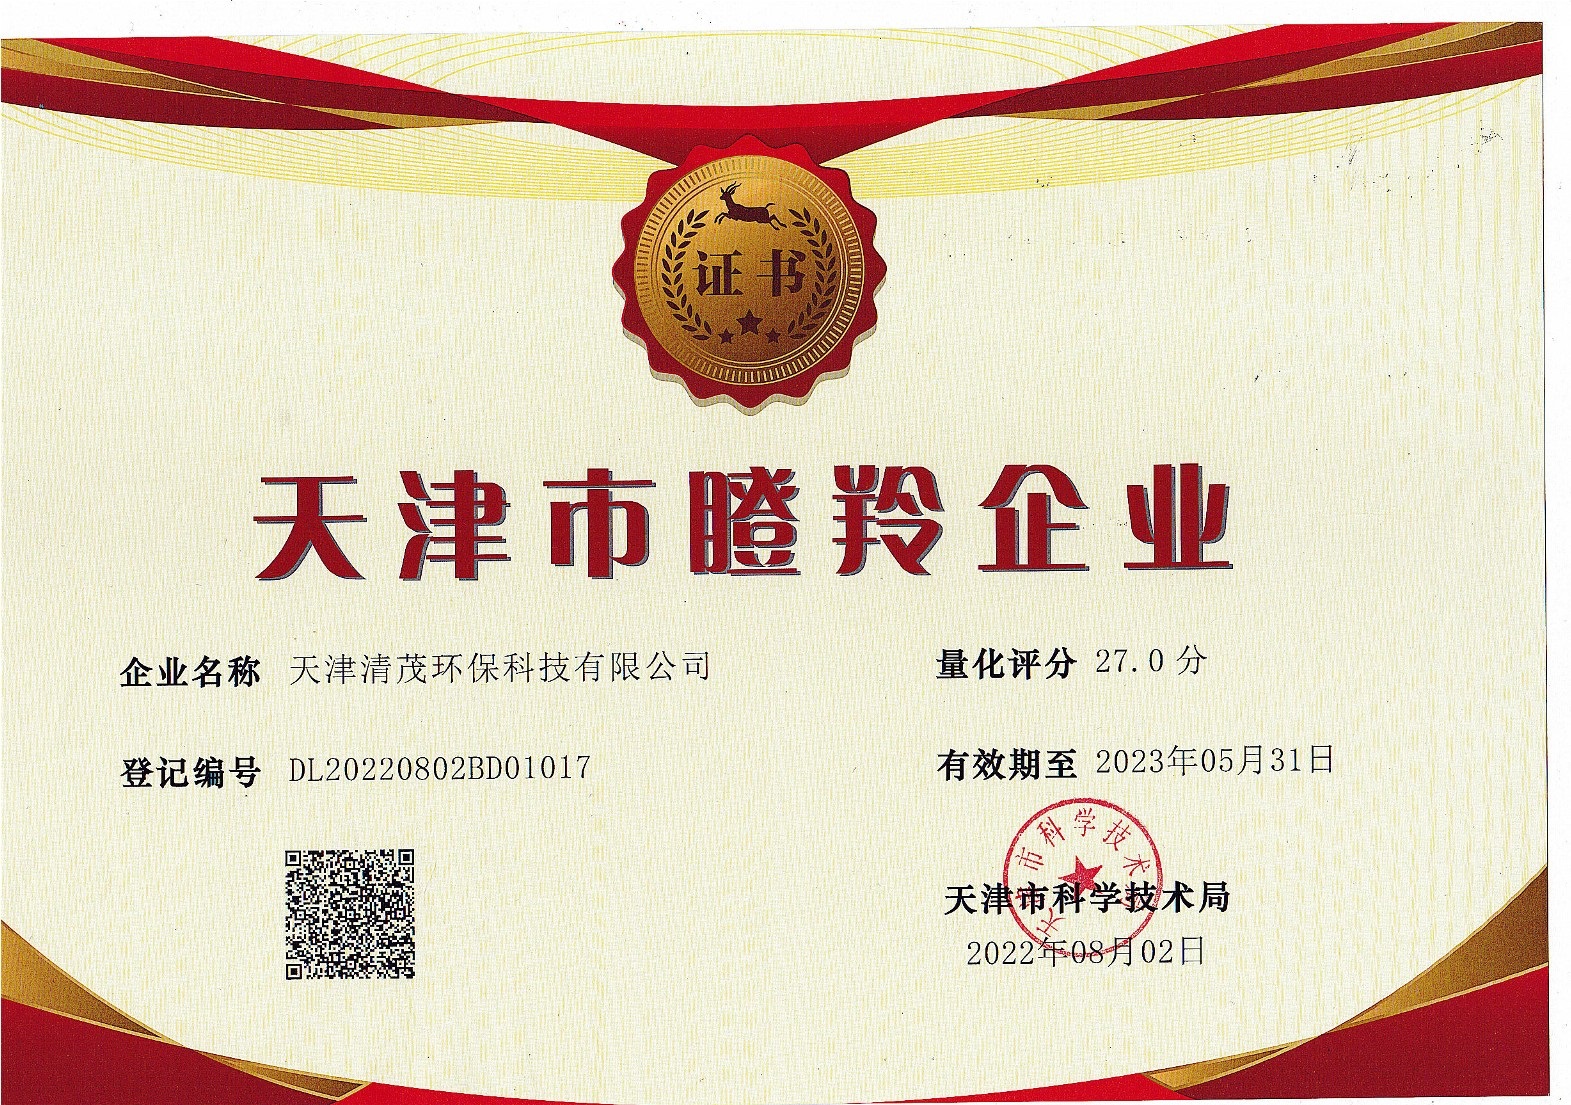 庆祝我司入围2022年度第二批天津市瞪羚企业